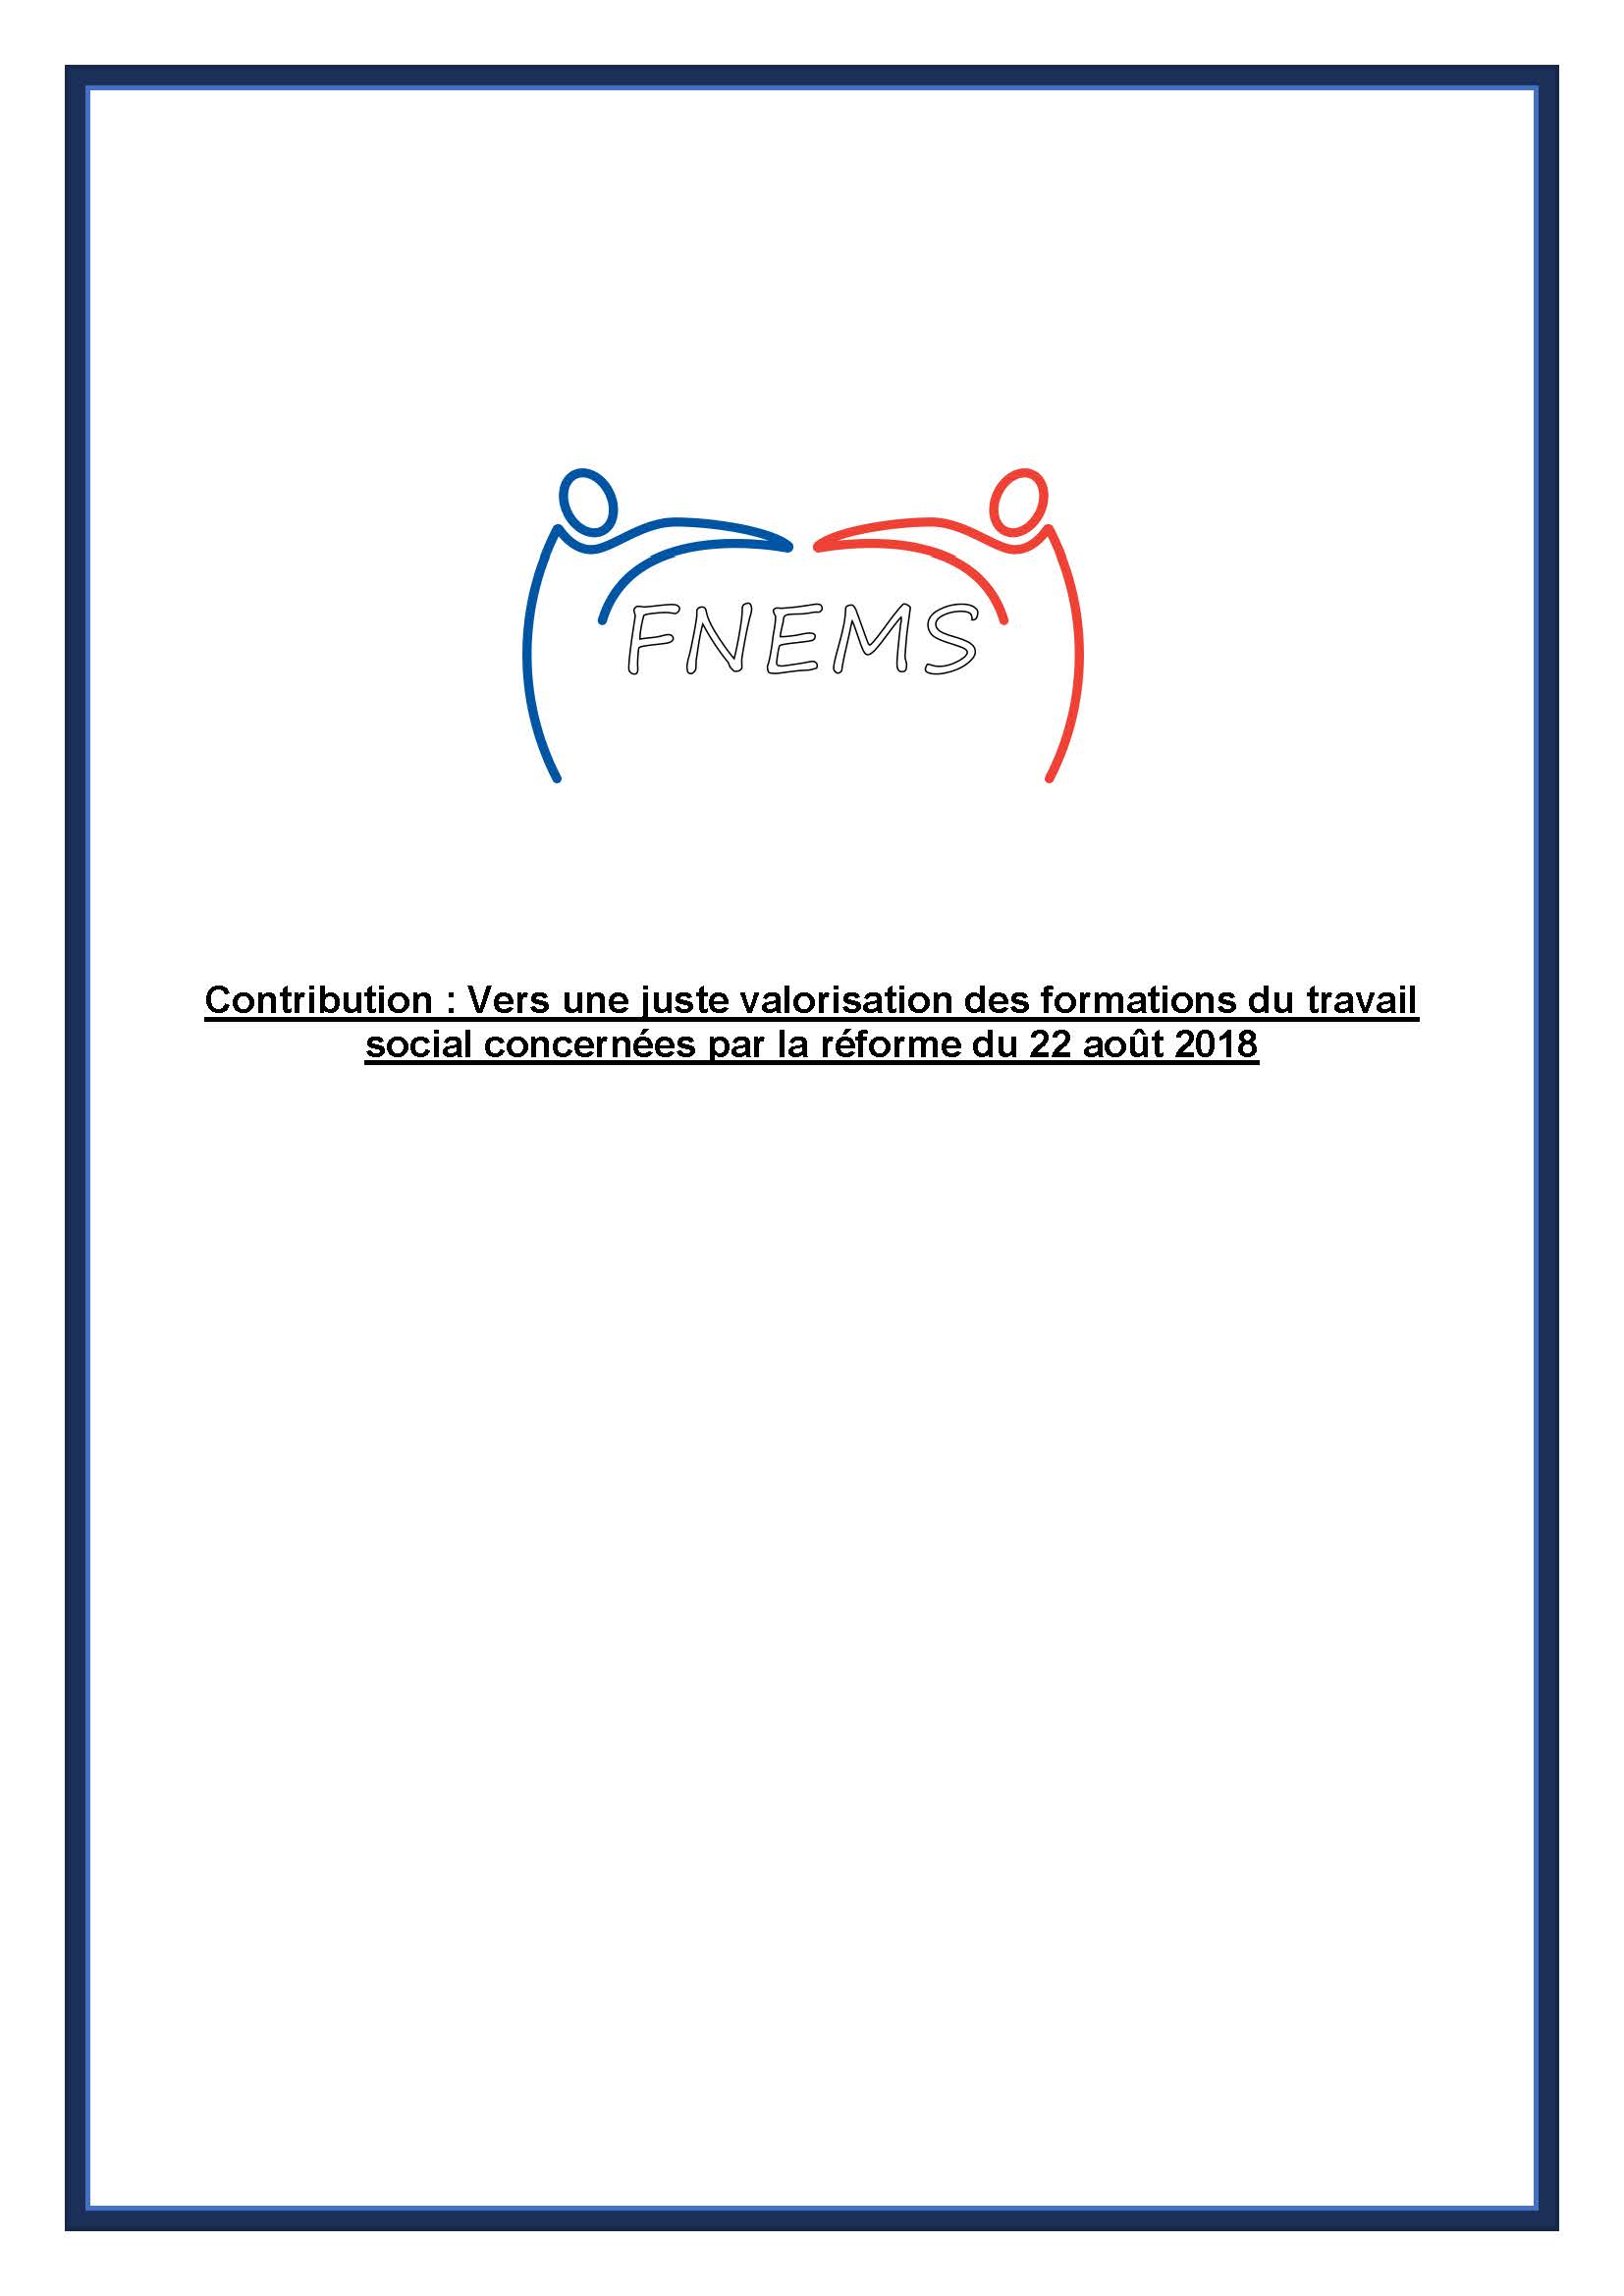 Contribution de la FNEMS : Vers une juste valorisation des formations du travail social concernées par la réforme du 22 août 2018